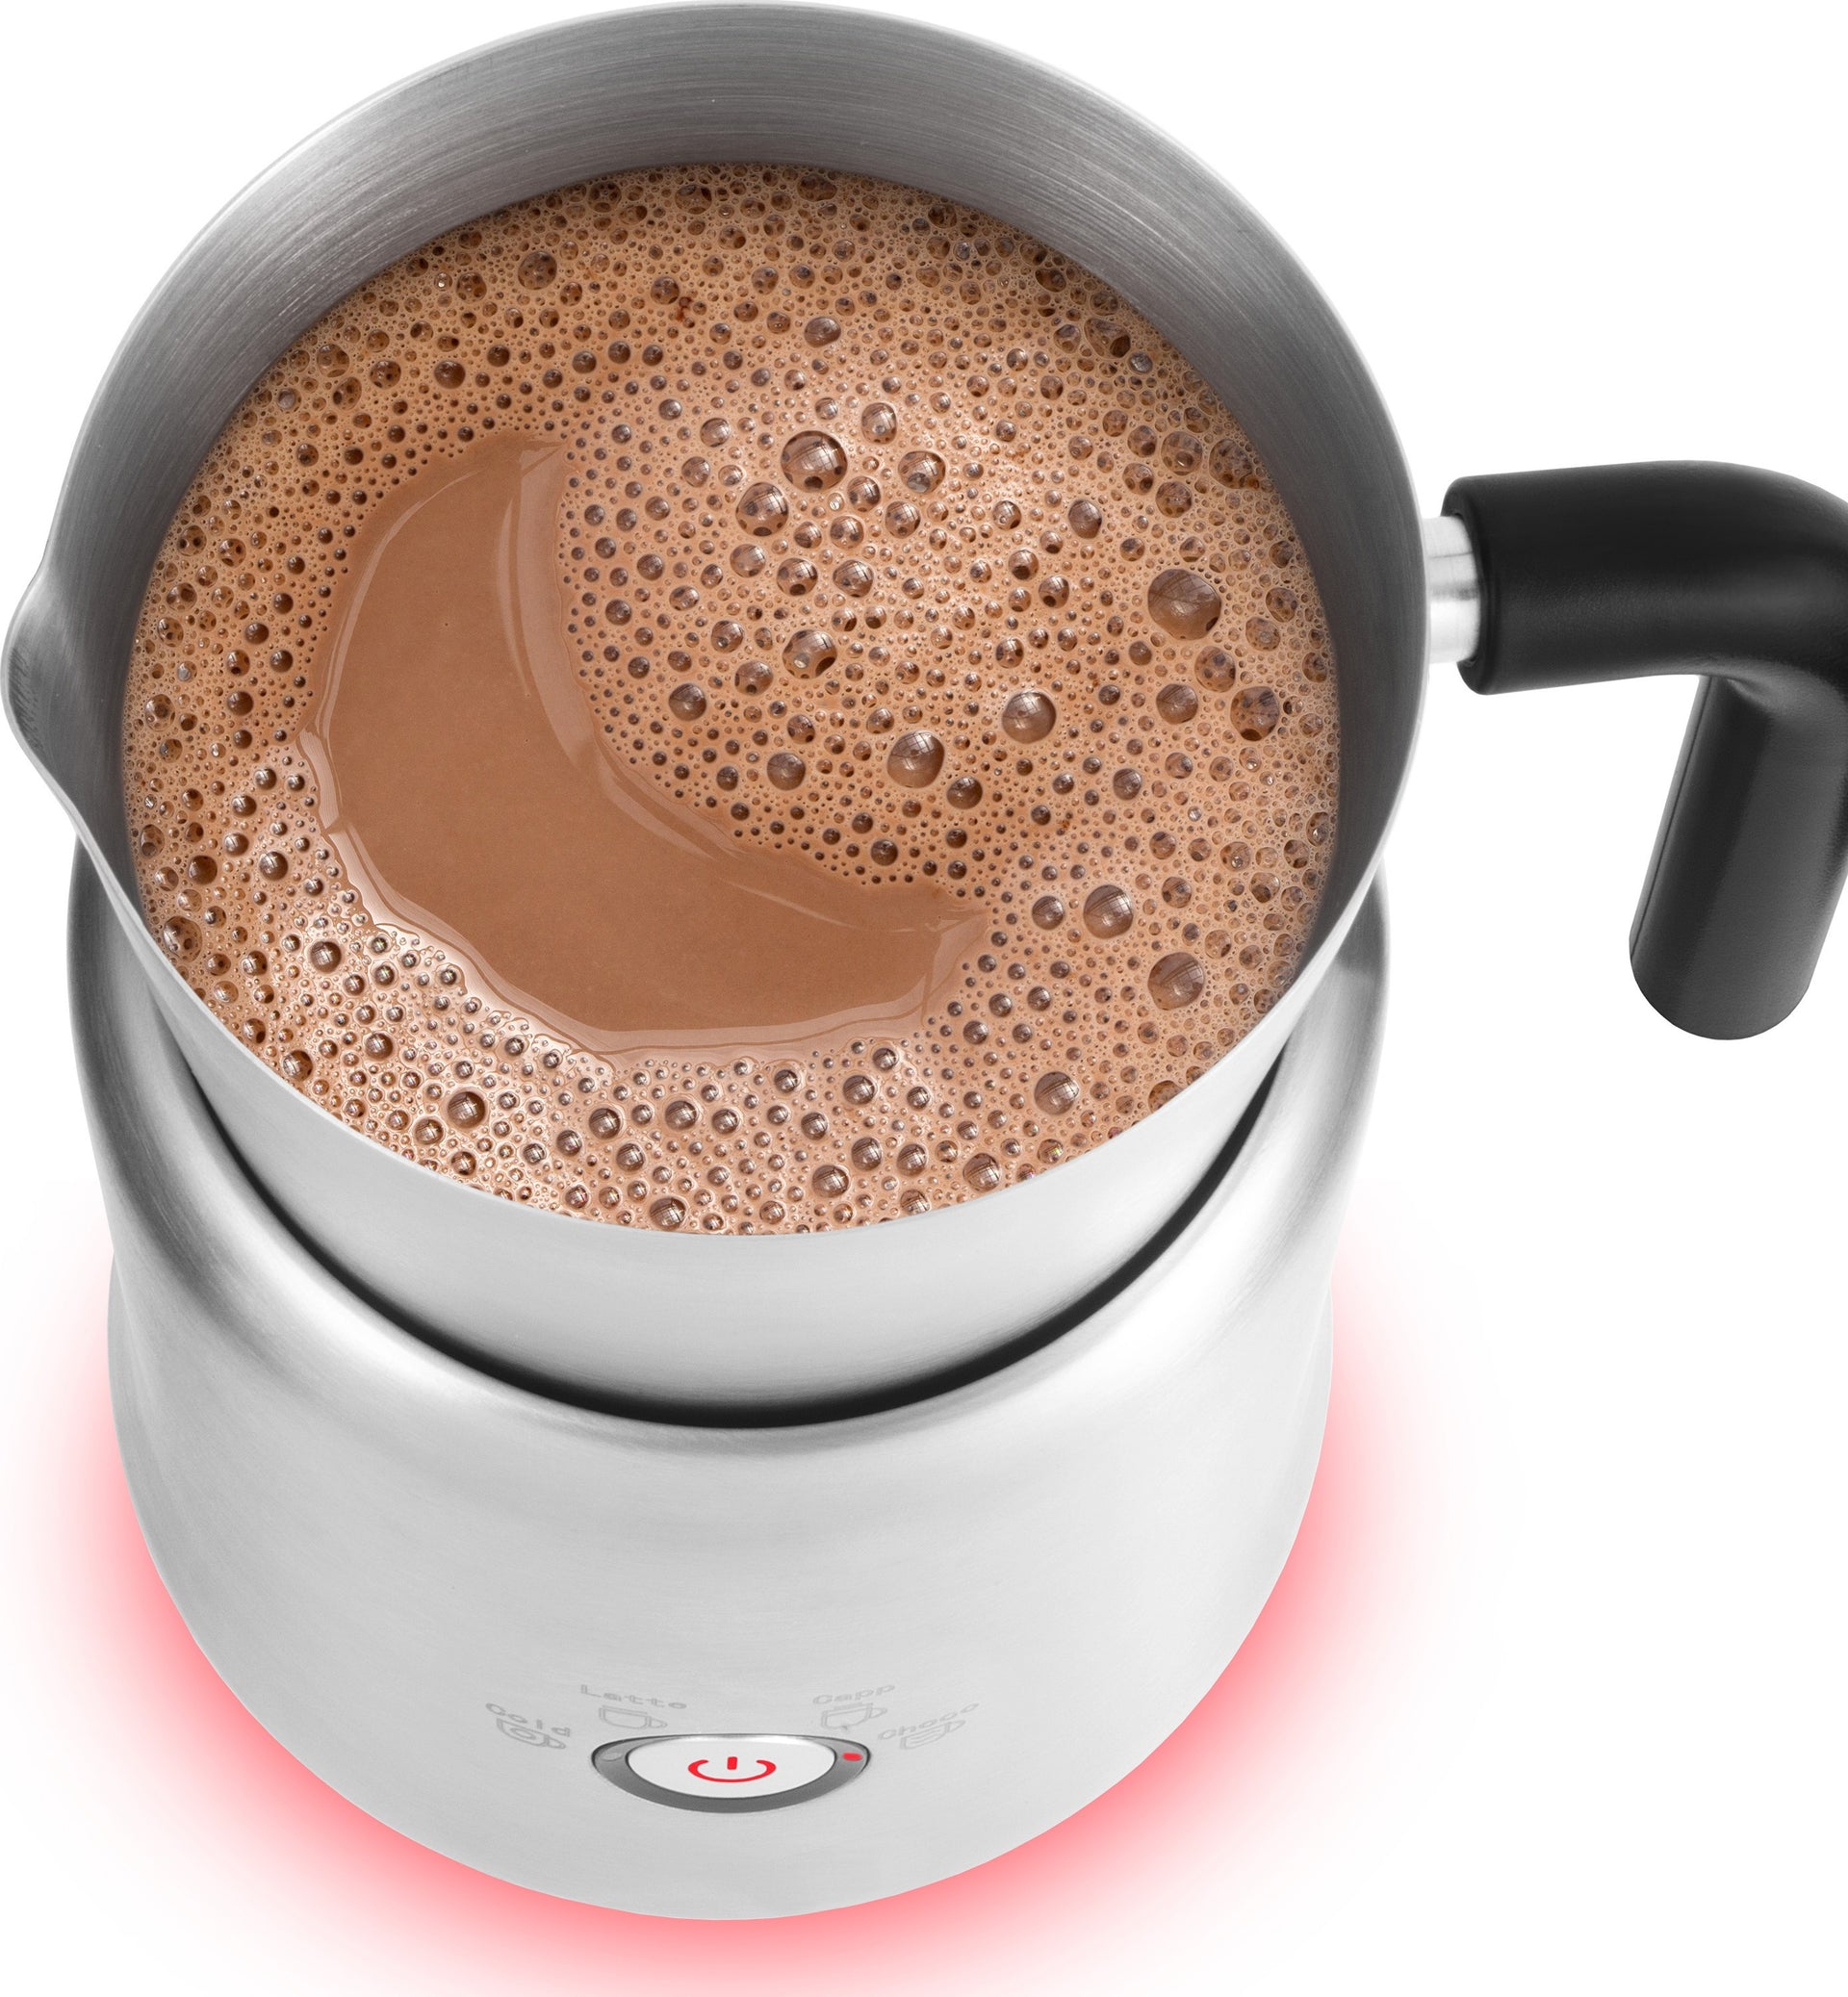  Elektriskais piena putotājs Catler MF610, kapučino, latte, kakao u.c. pagatavošanai